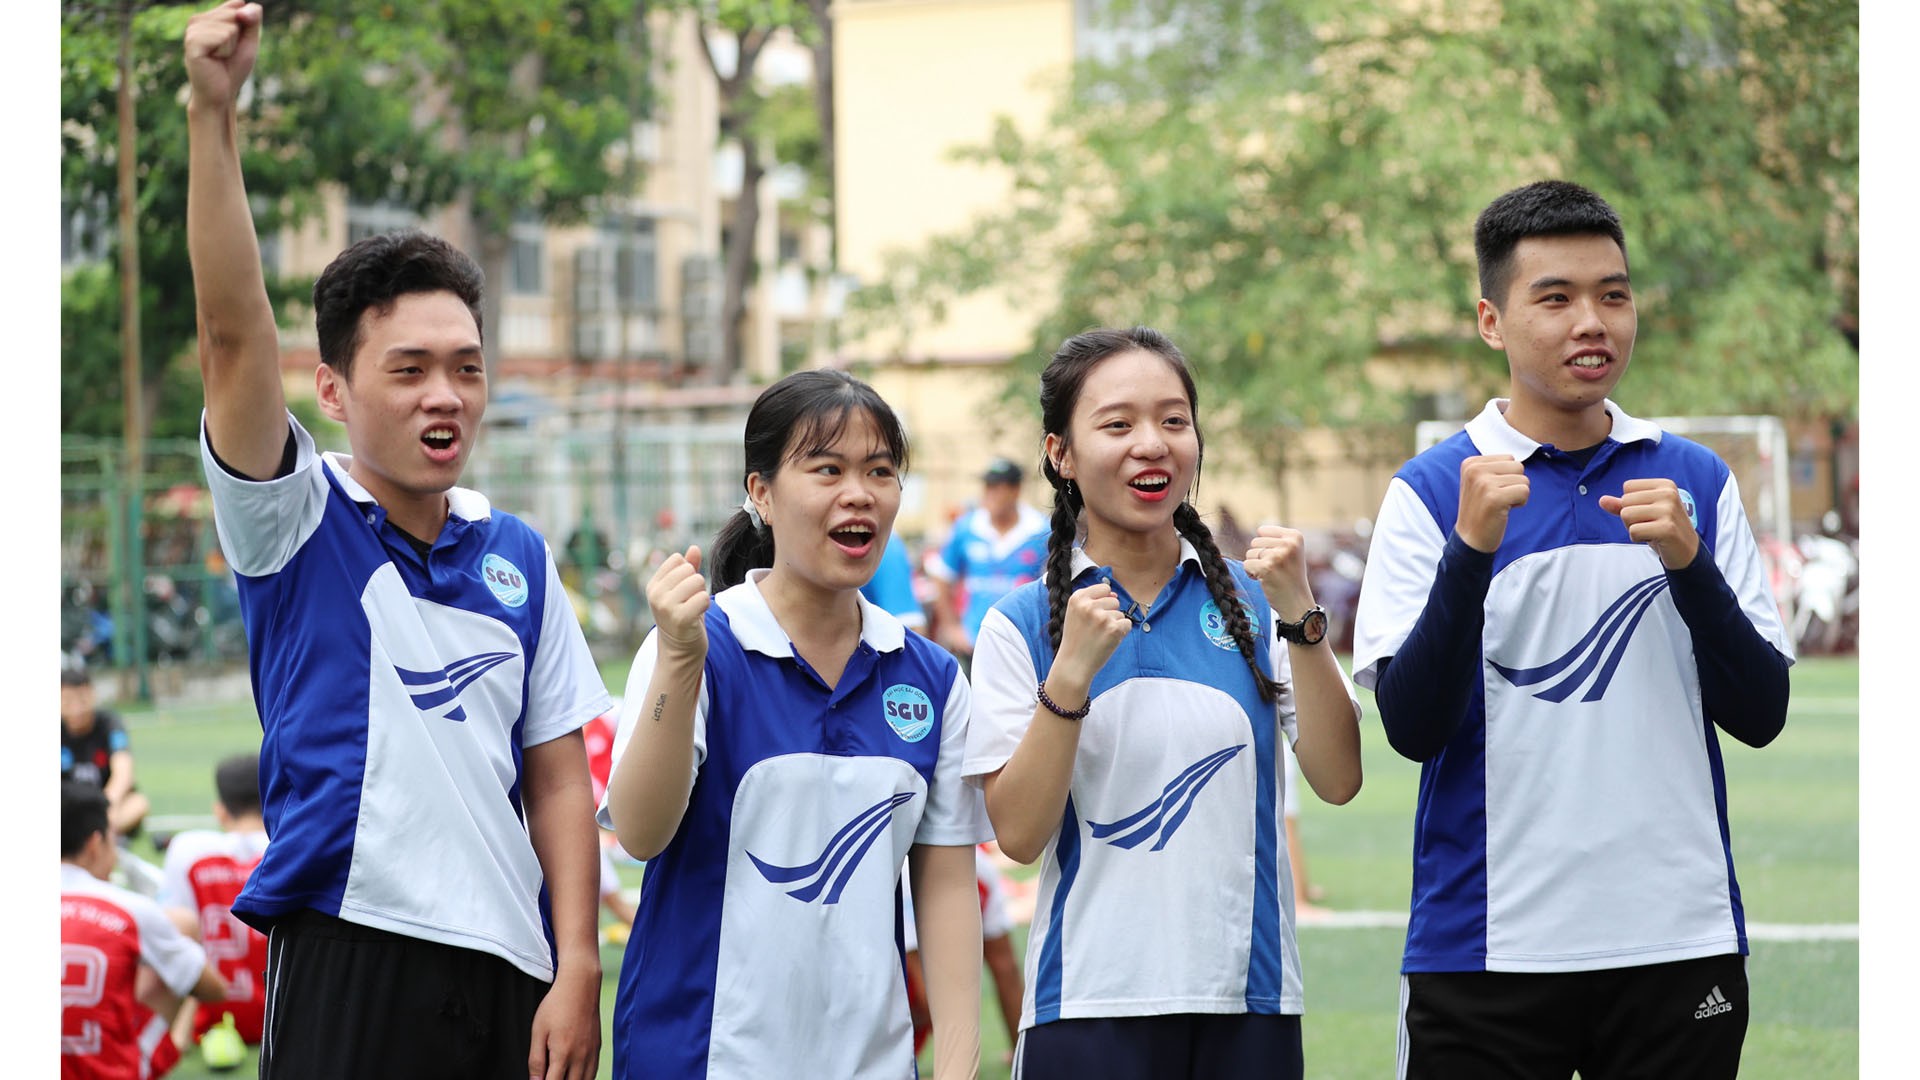 Cập nhật ngay thông tin tuyển sinh mới nhất 2022 của trường Đại học Sài Gòn!